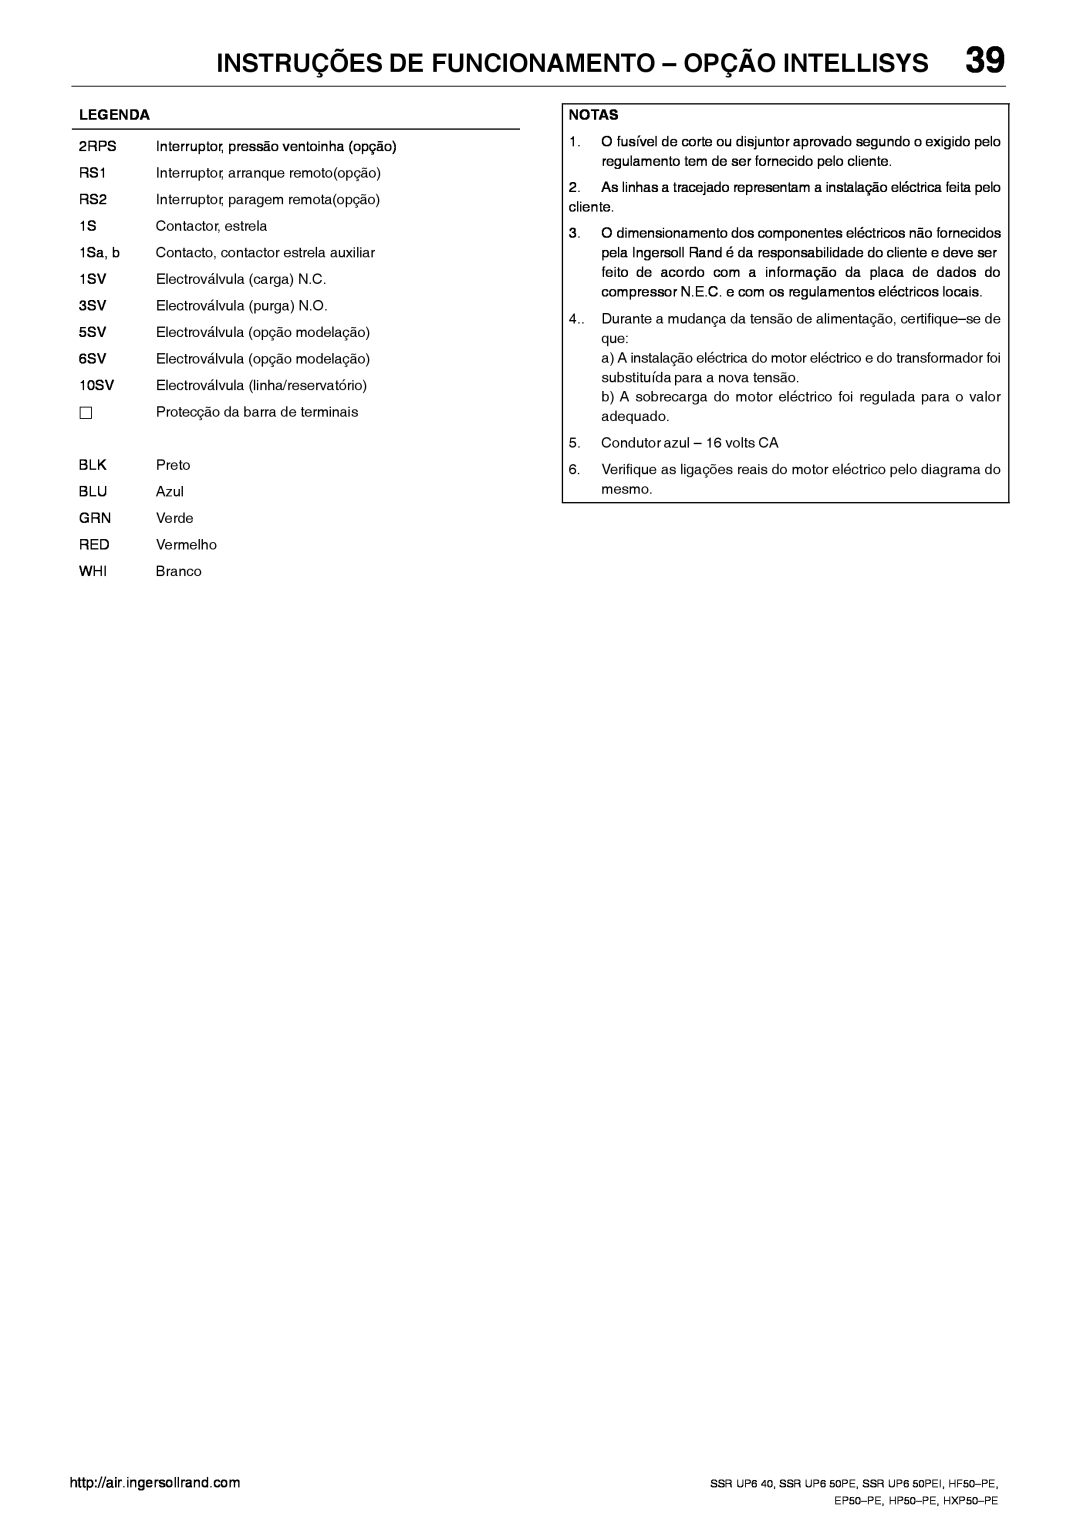 Ingersoll-Rand EP50-PE, SSR UP6 40 Instruções De Funcionamento - Opção Intellisys, Interruptor, pressão ventoinha opção 